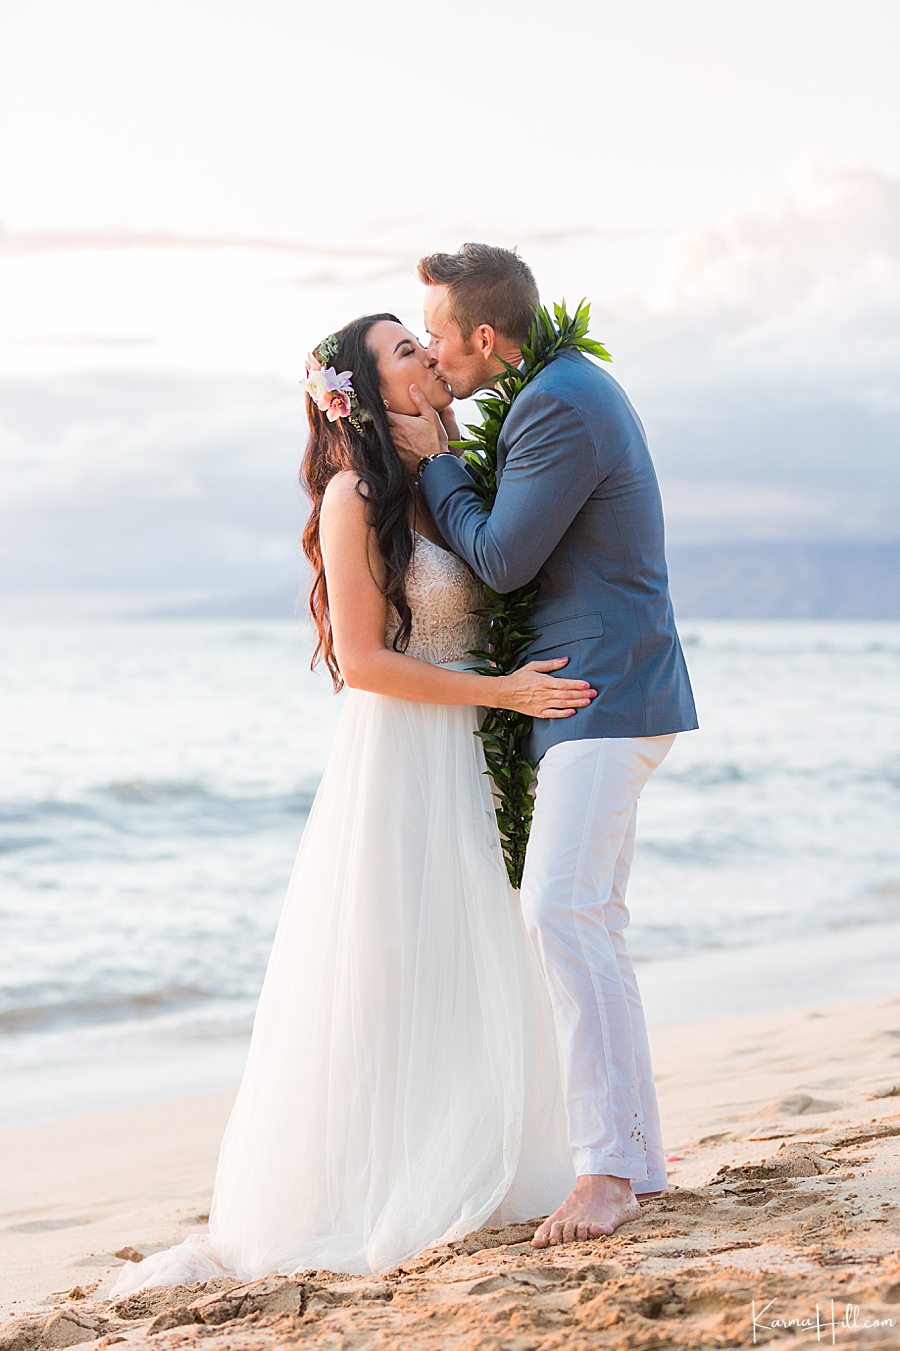 wedding kiss on maui beach 